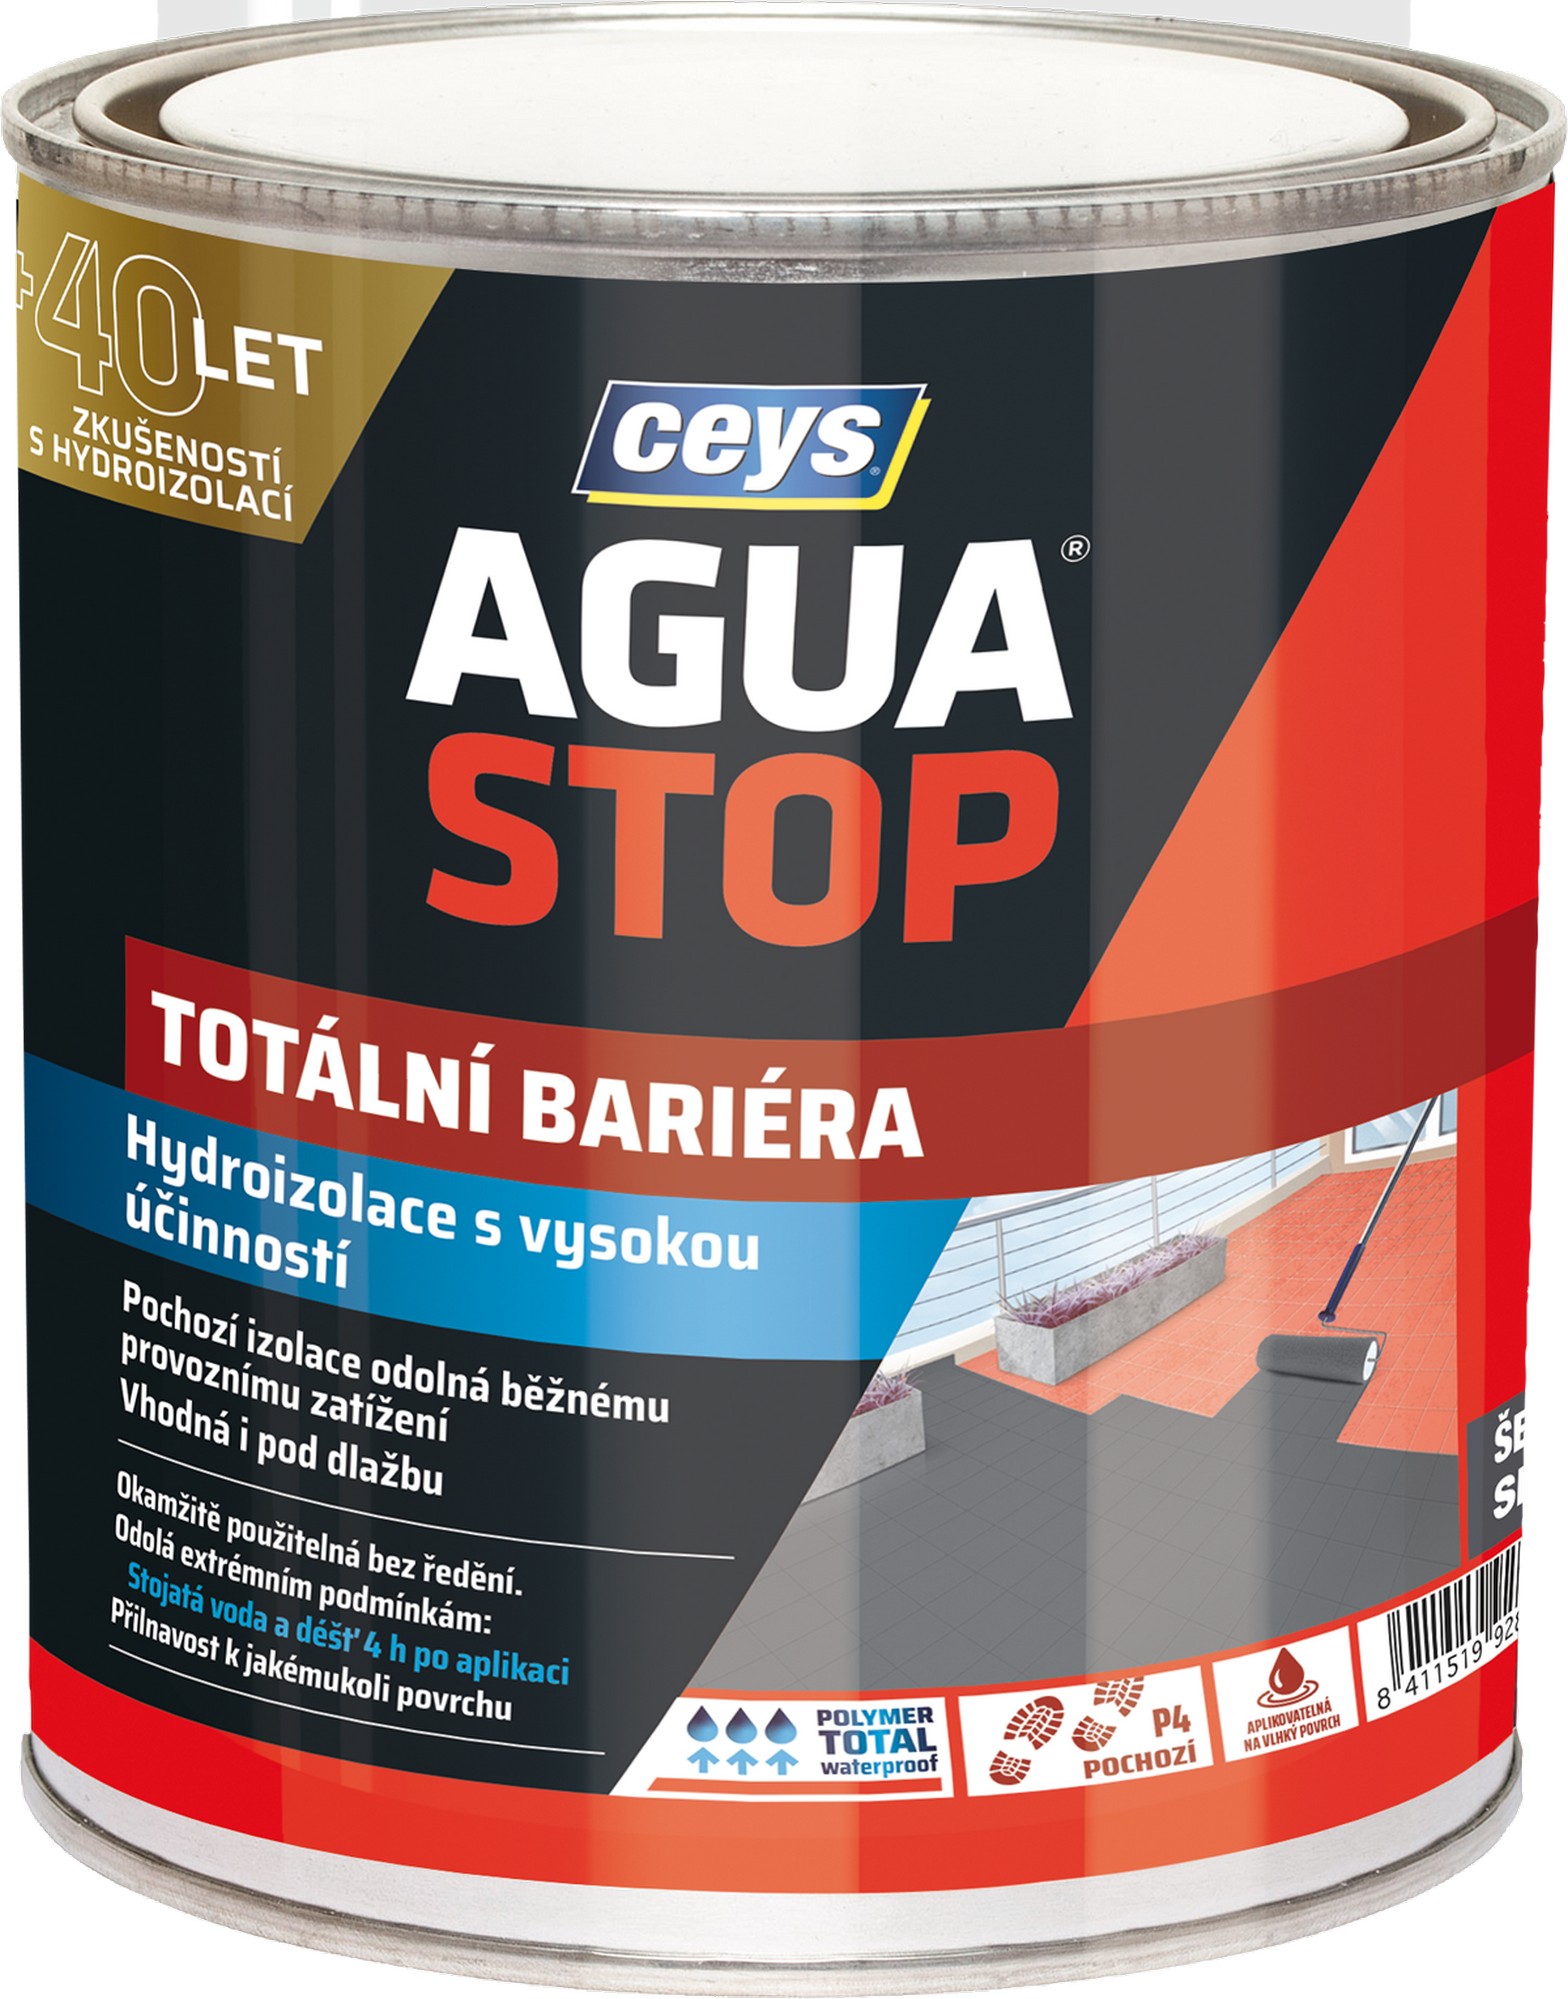 Hydroizolace Ceys AGUA STOP totální bariéra 1 kg